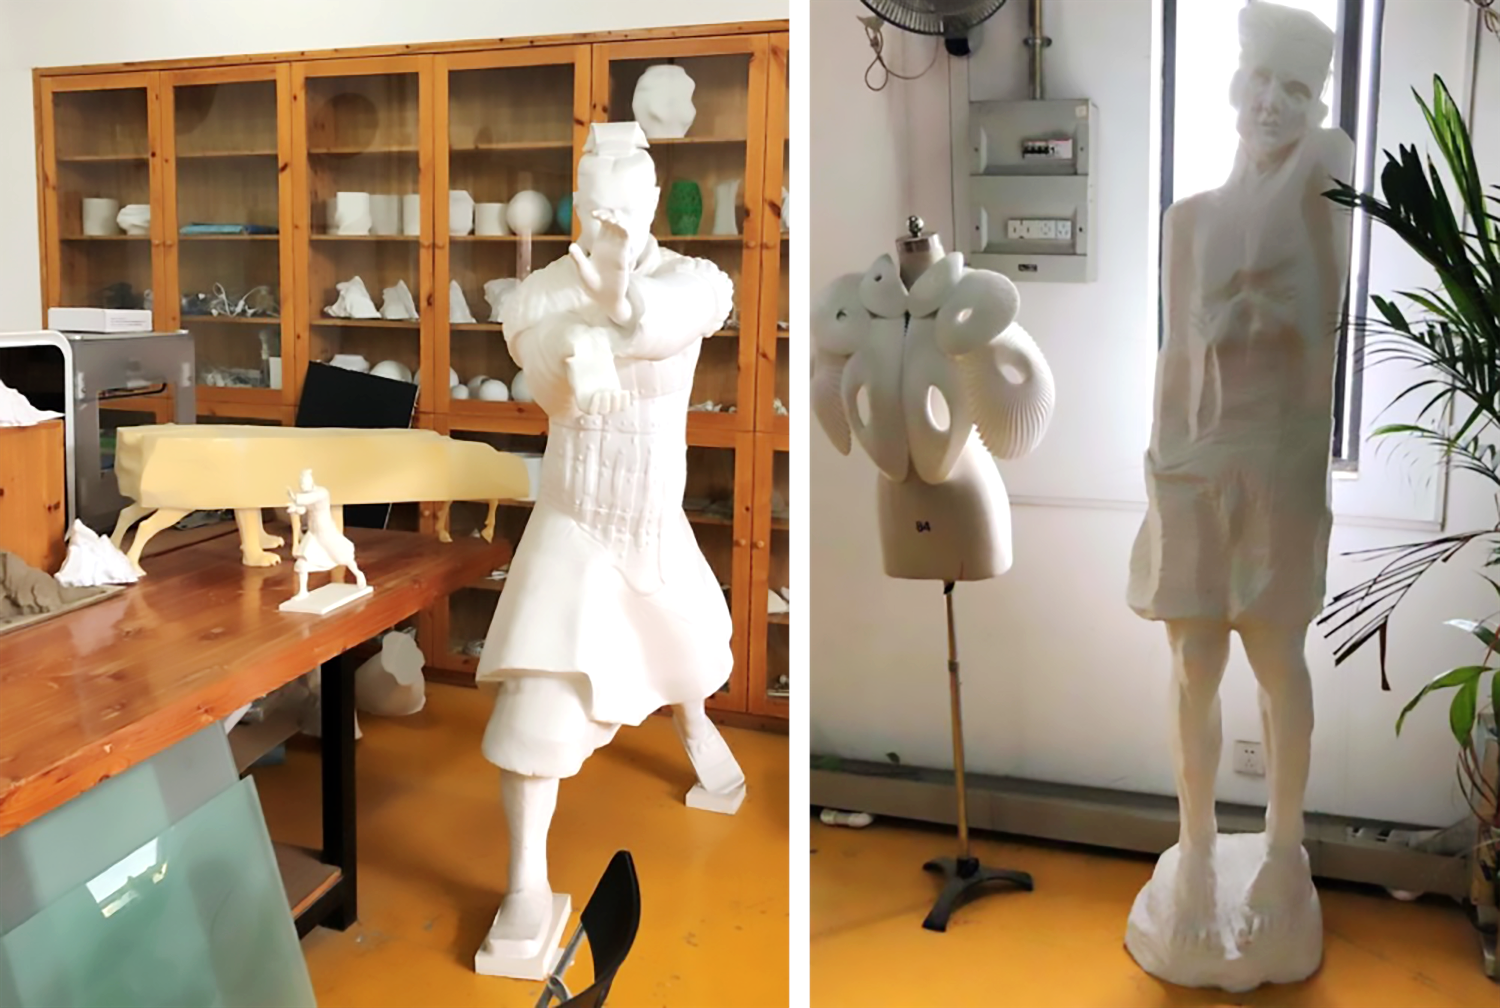 SLS 나일론 3D 프린팅 기술을 대학의 아트 디자인 실험실에 적용